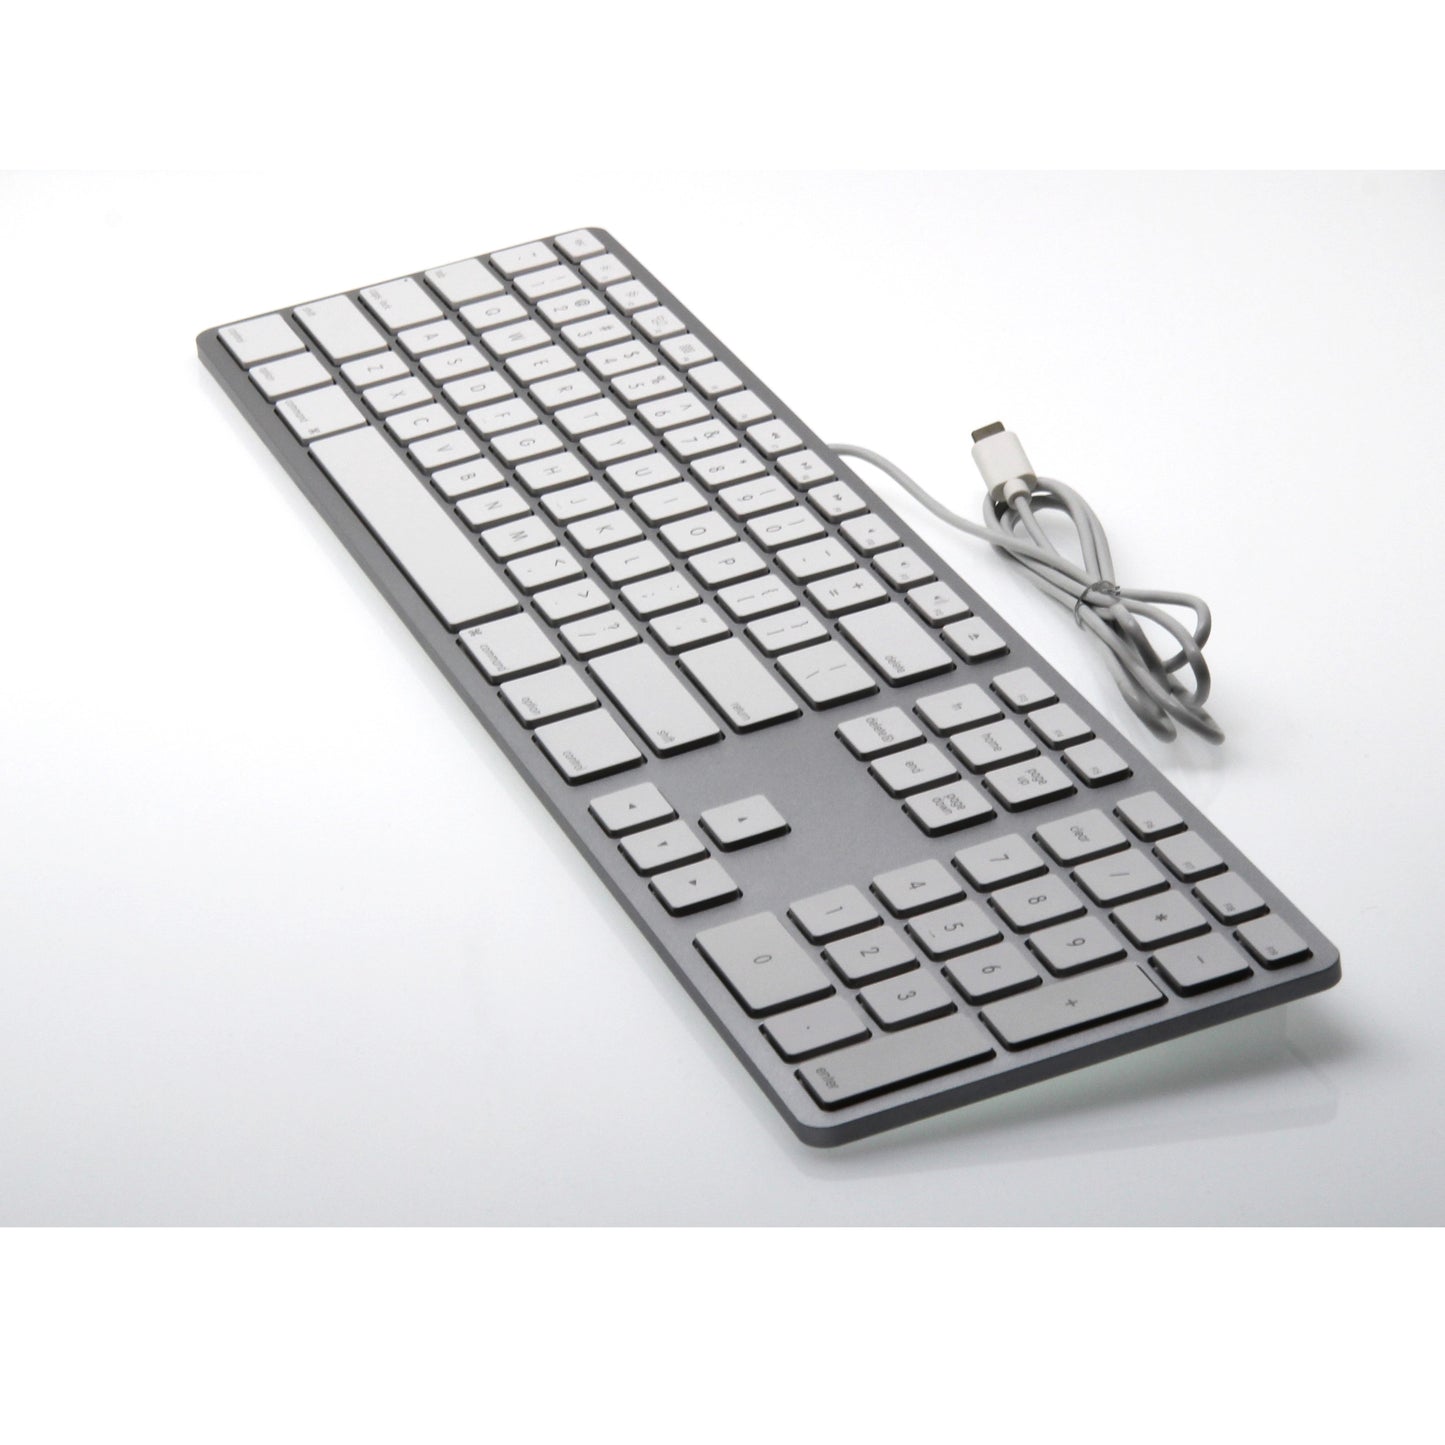 USB-C Keyboard for Mac - Silver